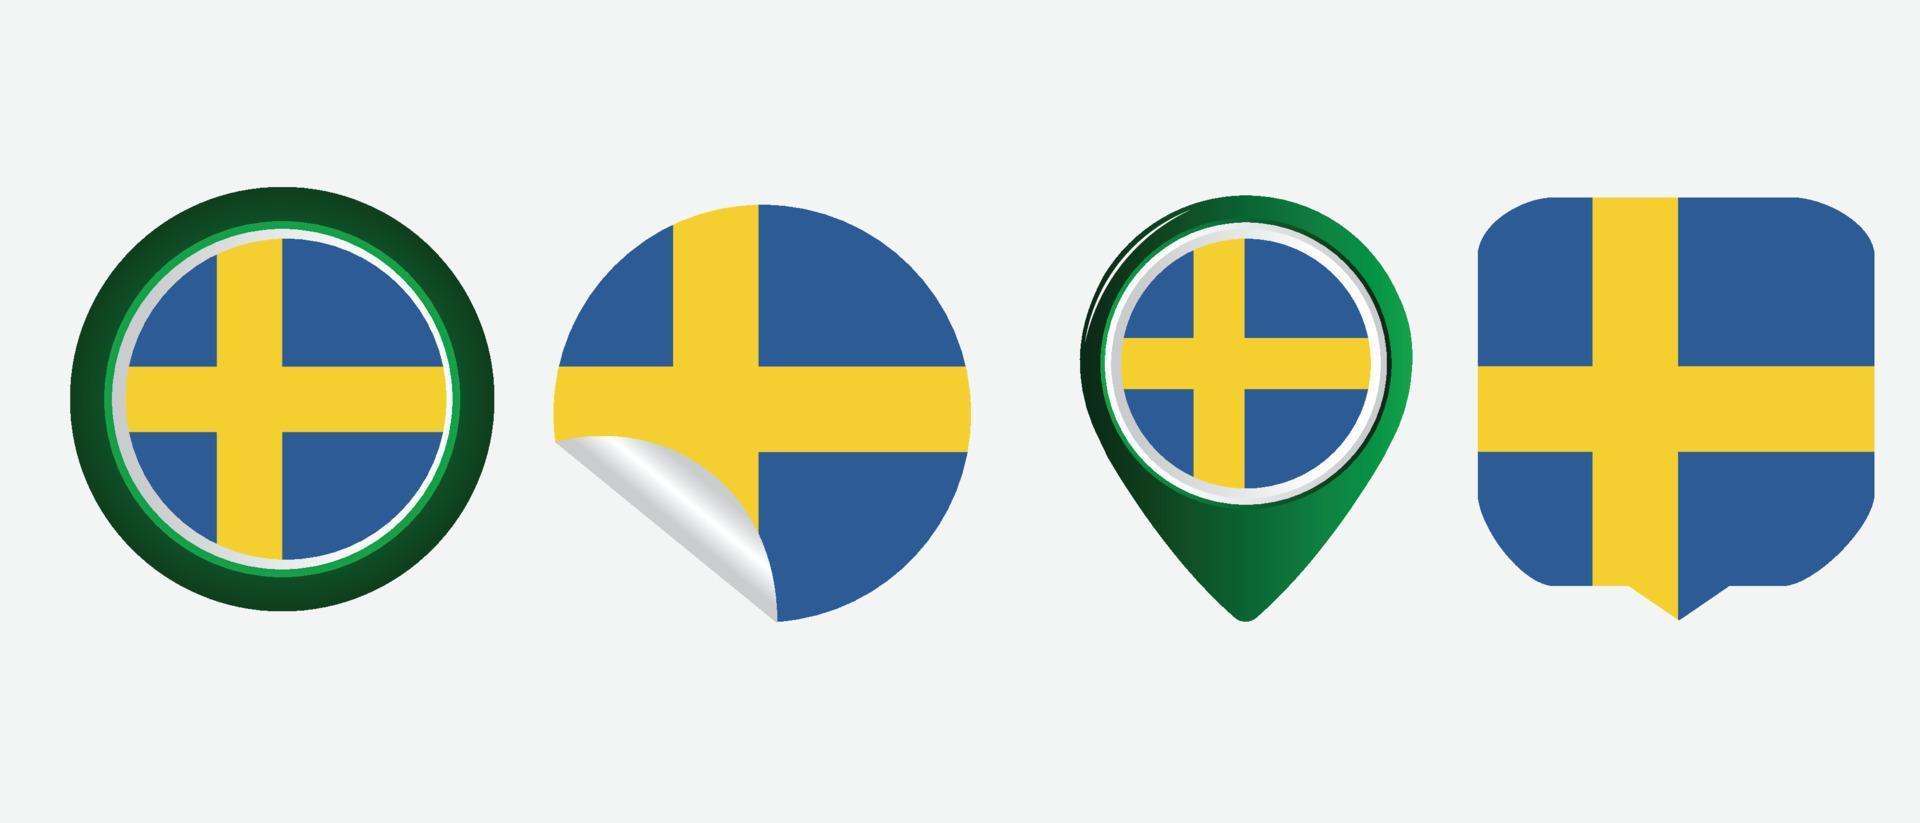 Sweden flag. flat icon symbol vector illustration